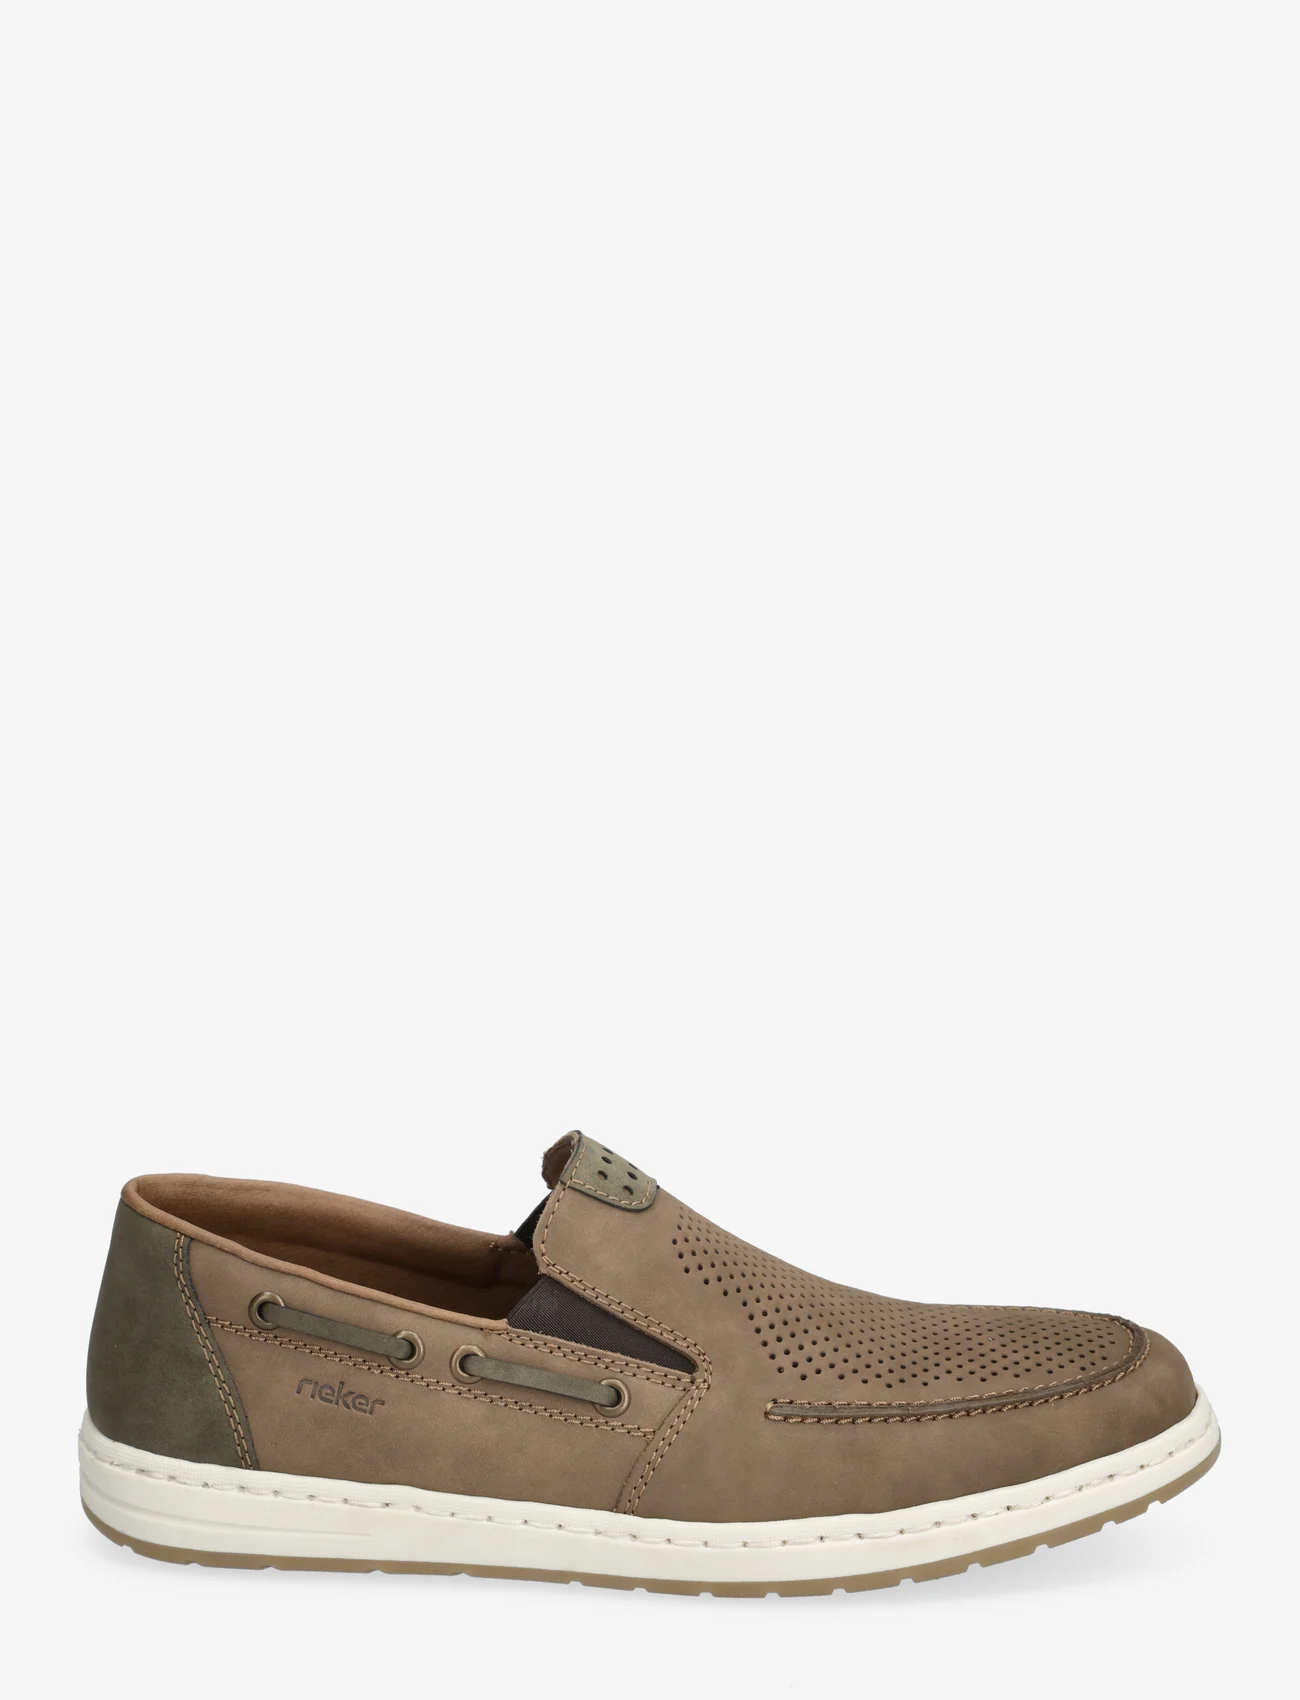 Rieker - 18266-26 - slip on sneakers - brown - 1